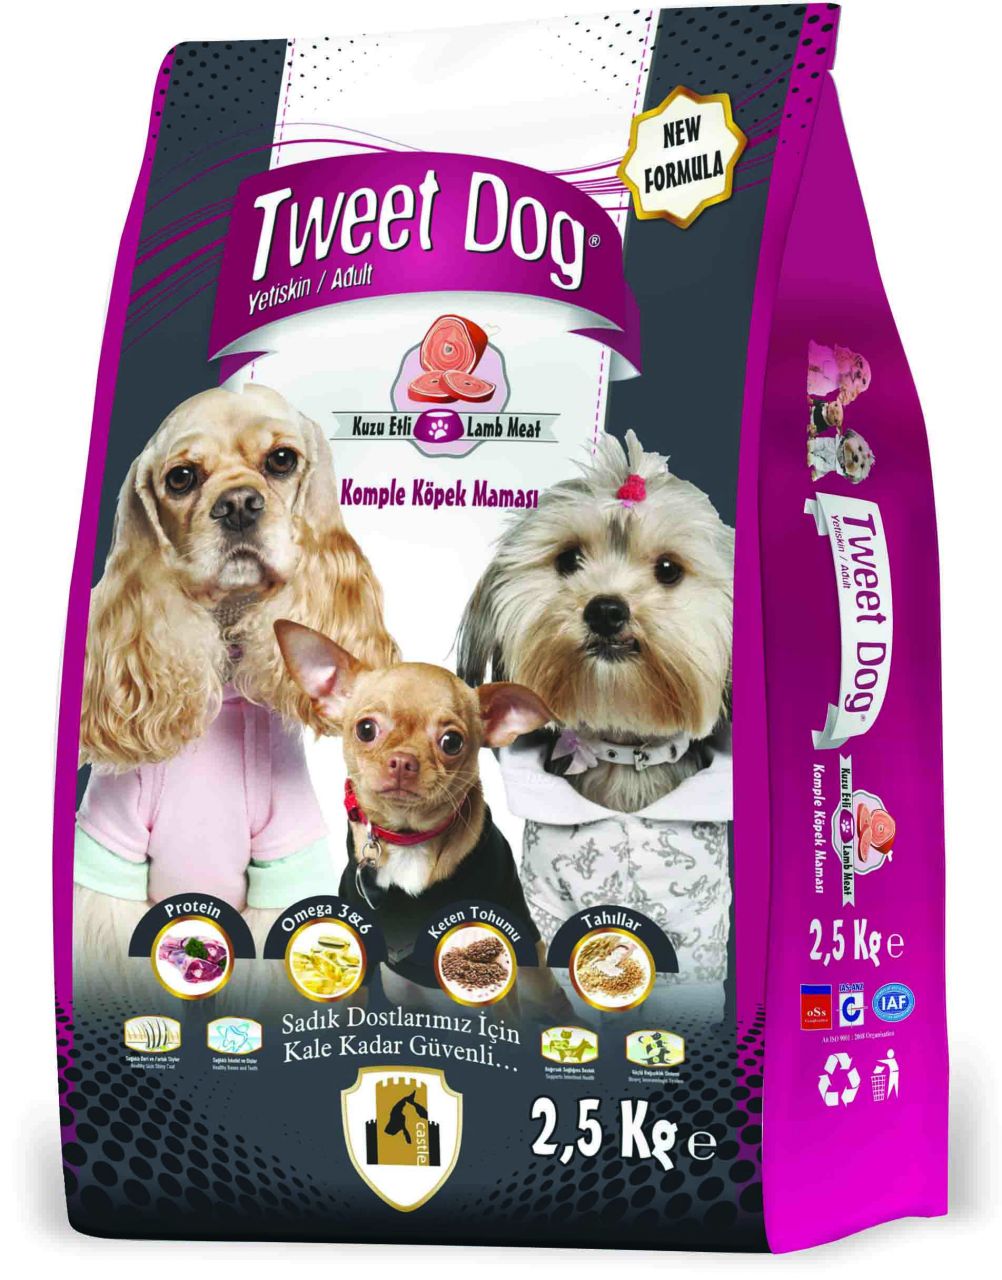 Tweet Dog Kuzu Etli Yetişkin Komple Köpek Maması 2,5 kg Marketpaketi